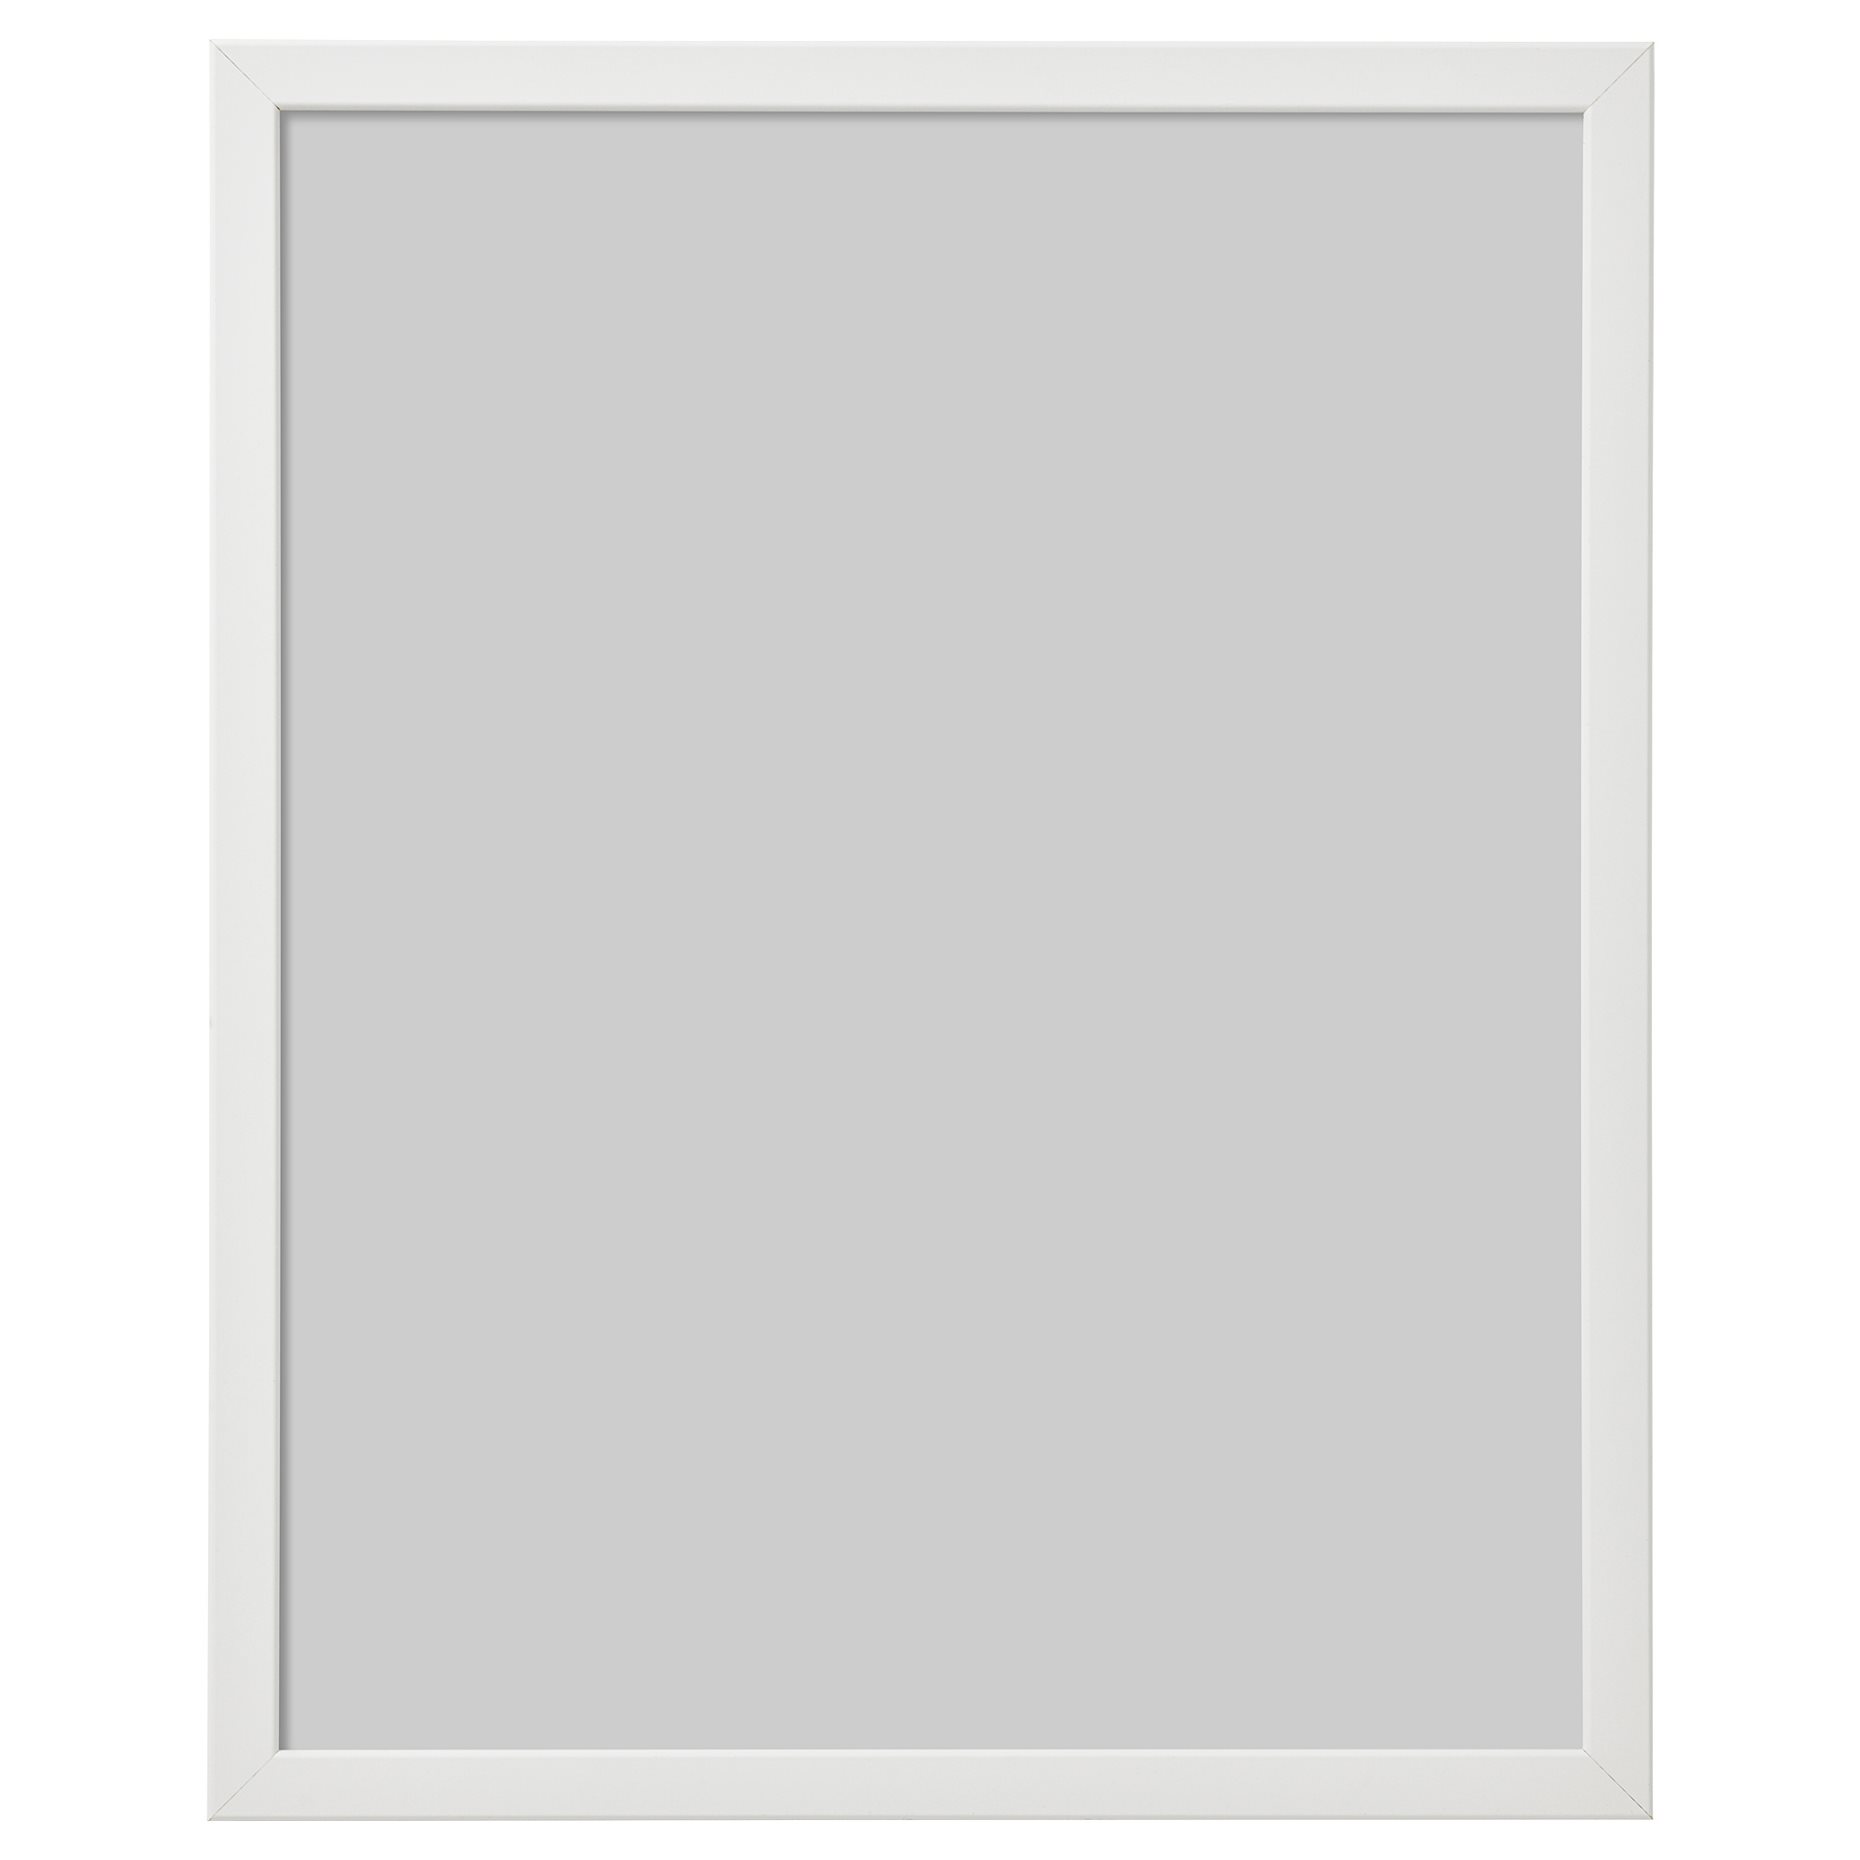 FISKBO, frame, 40x50 cm, 003.003.86